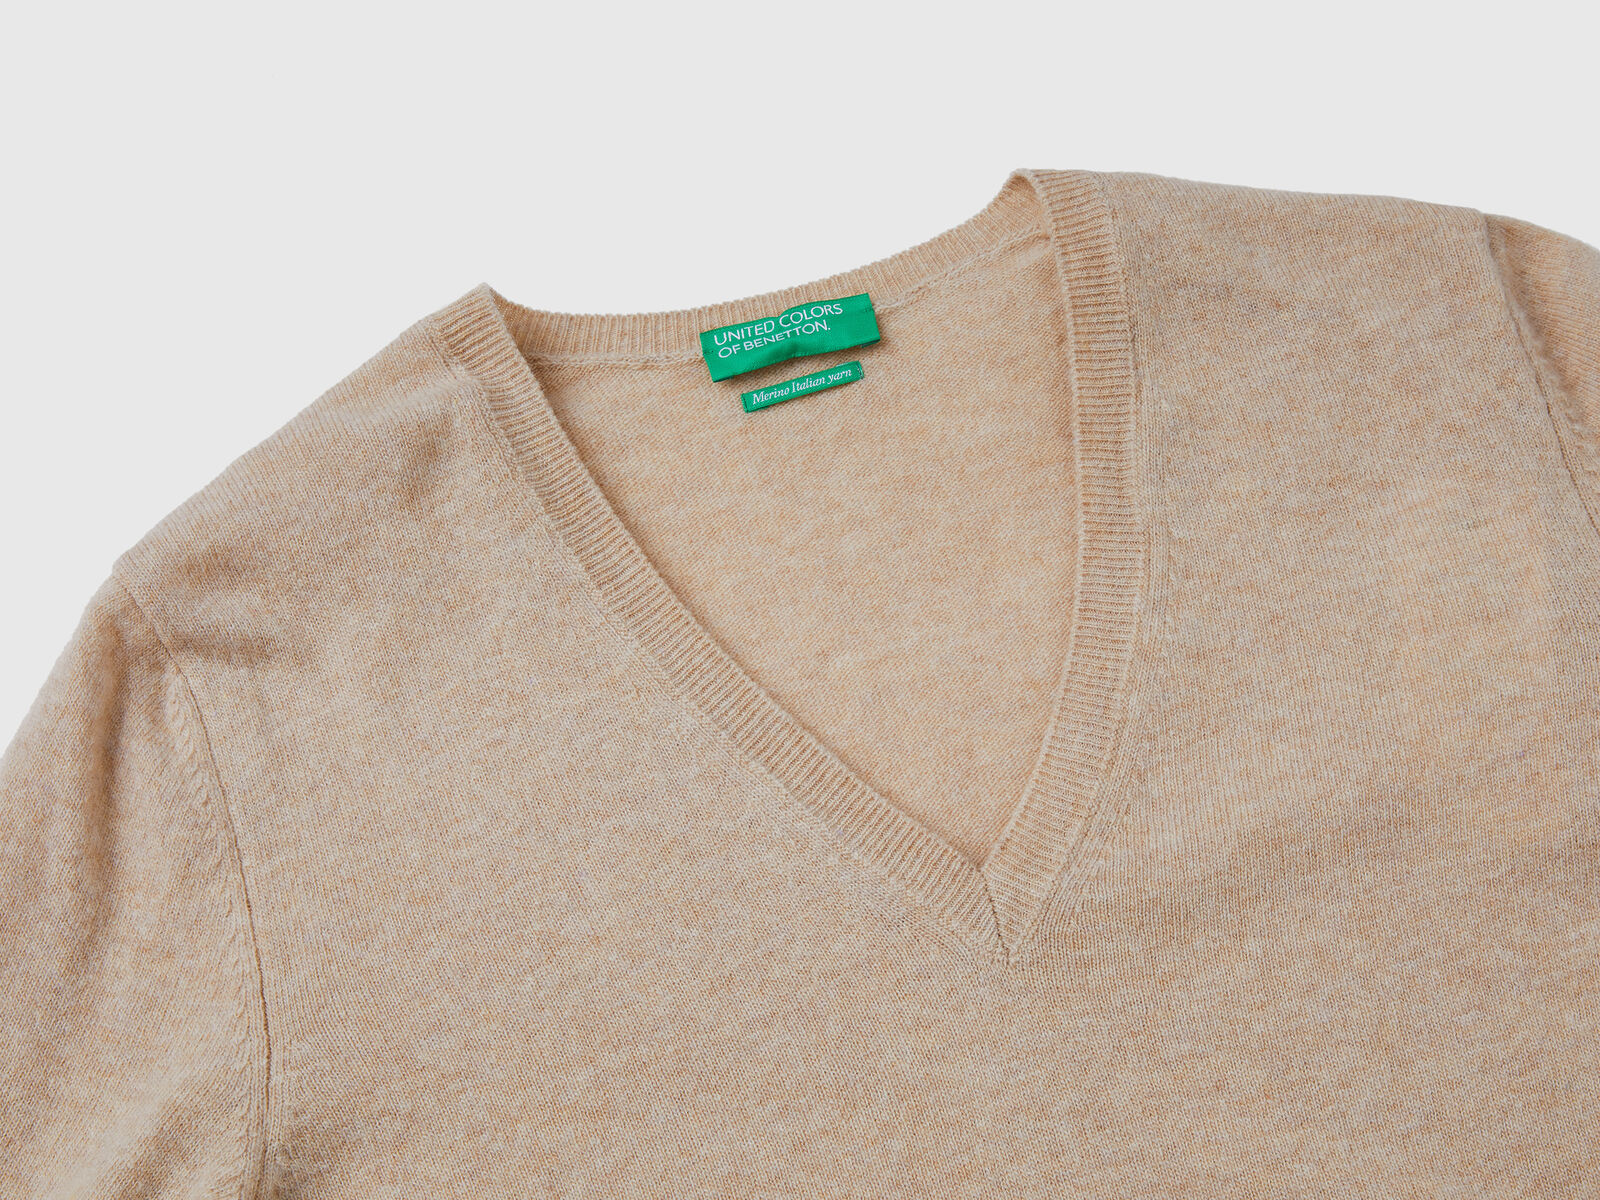 Beige V-neck sweater in pure Merino wool - Beige | Benetton